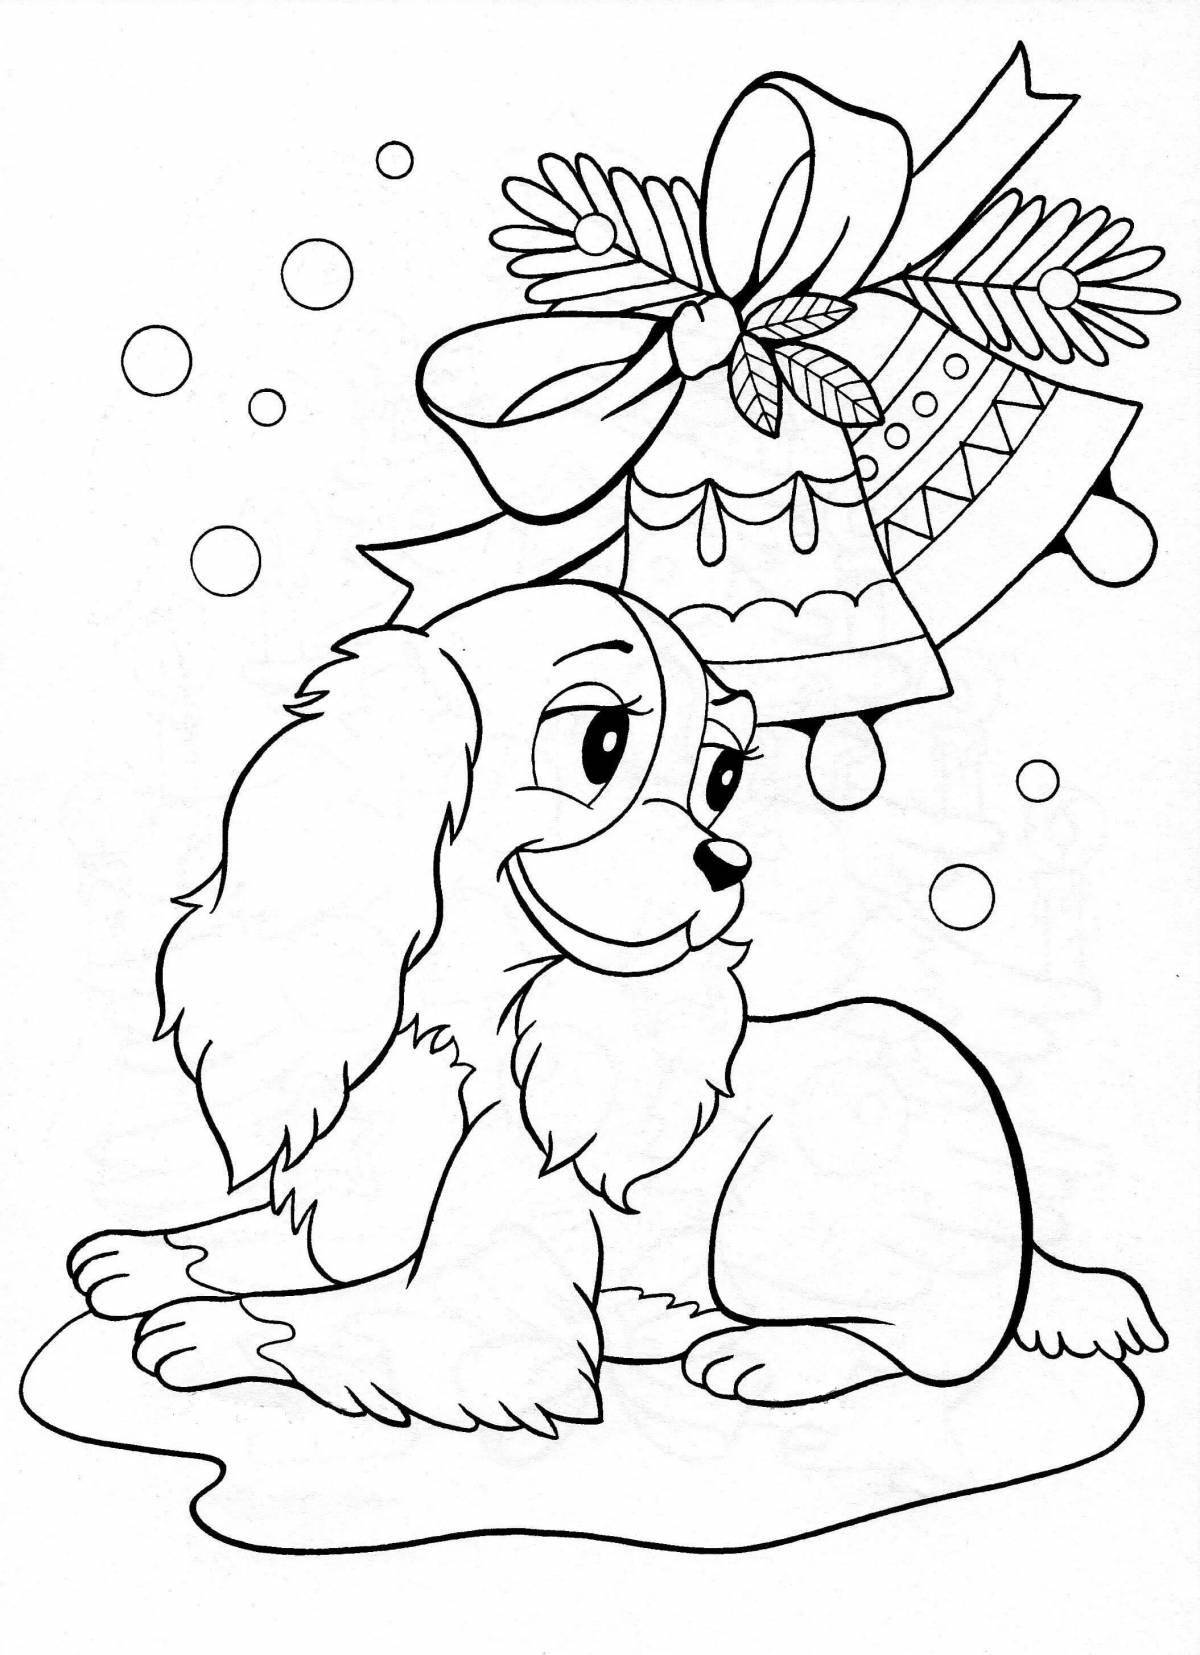 Christmas dog coloring page